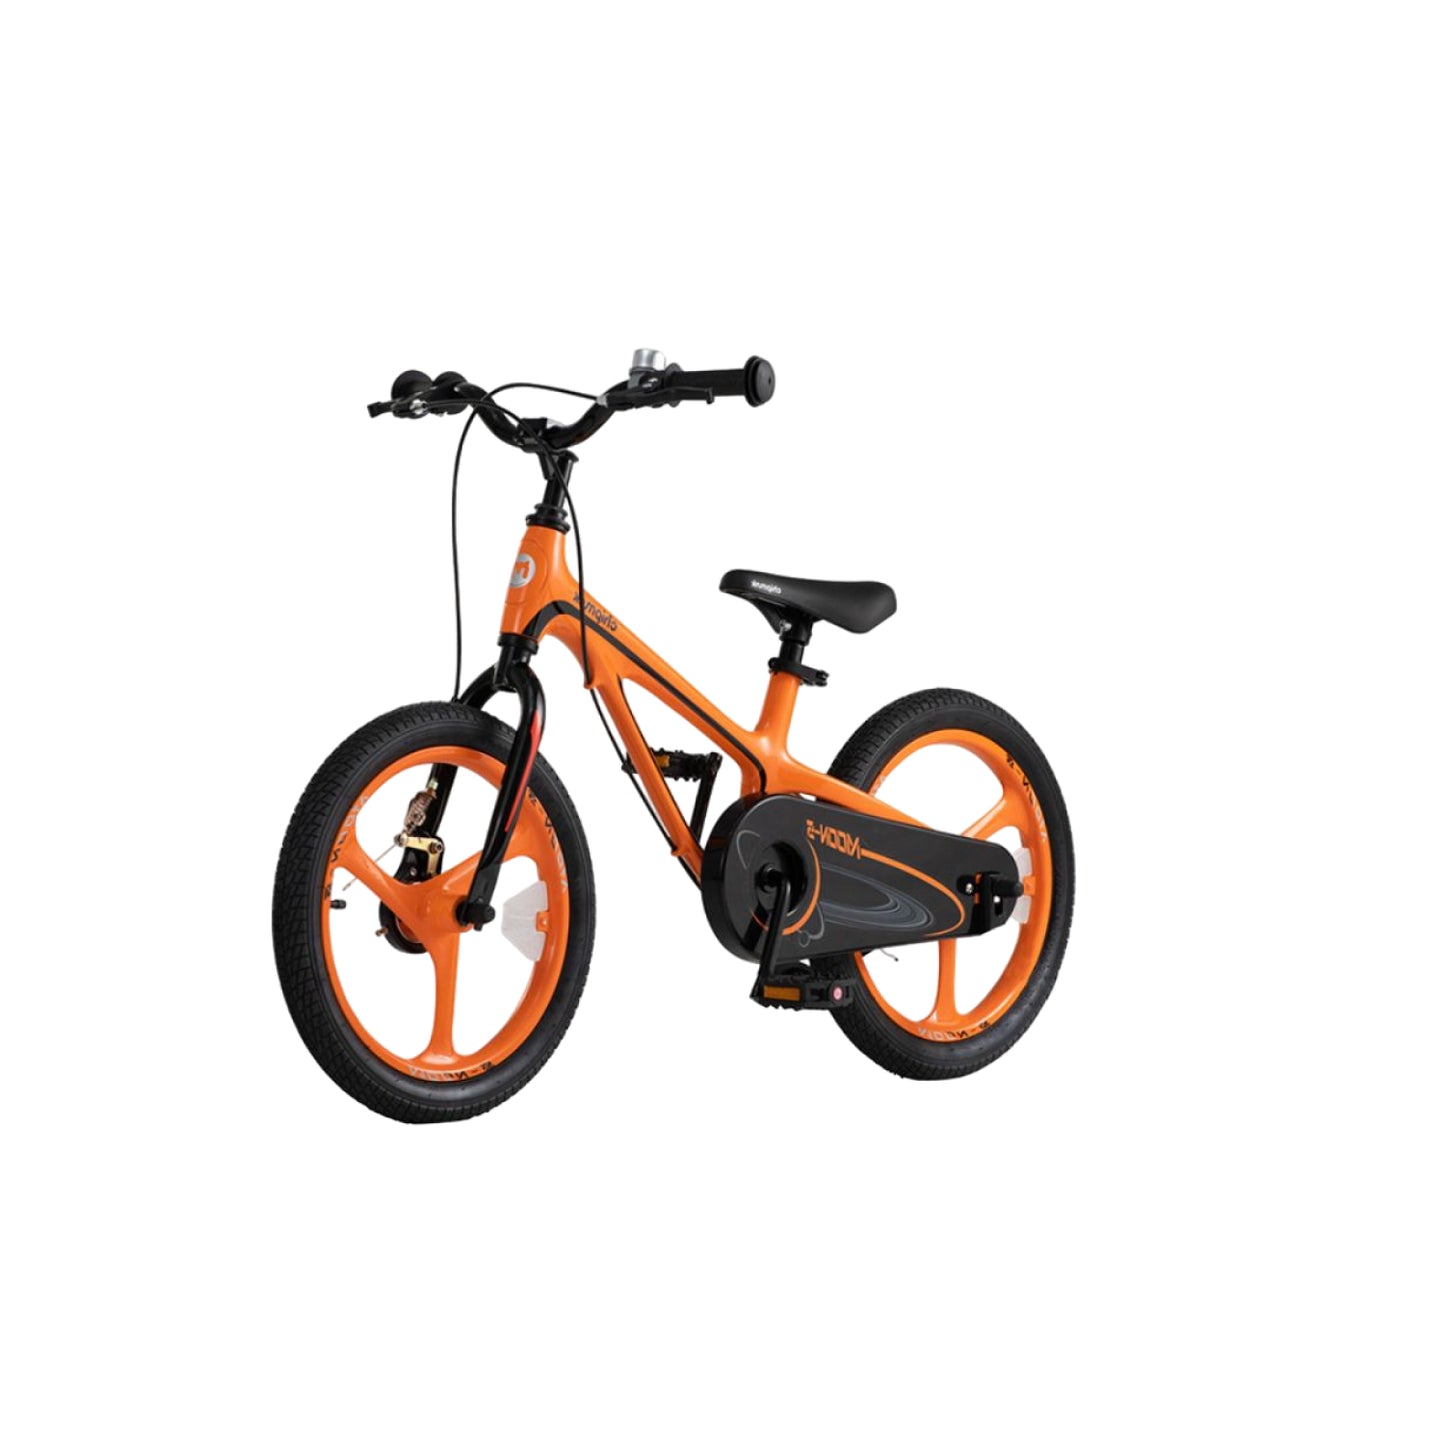 Xe đạp trẻ em Chipmunk Moon 18 inch màu cam CM18-5P-OR